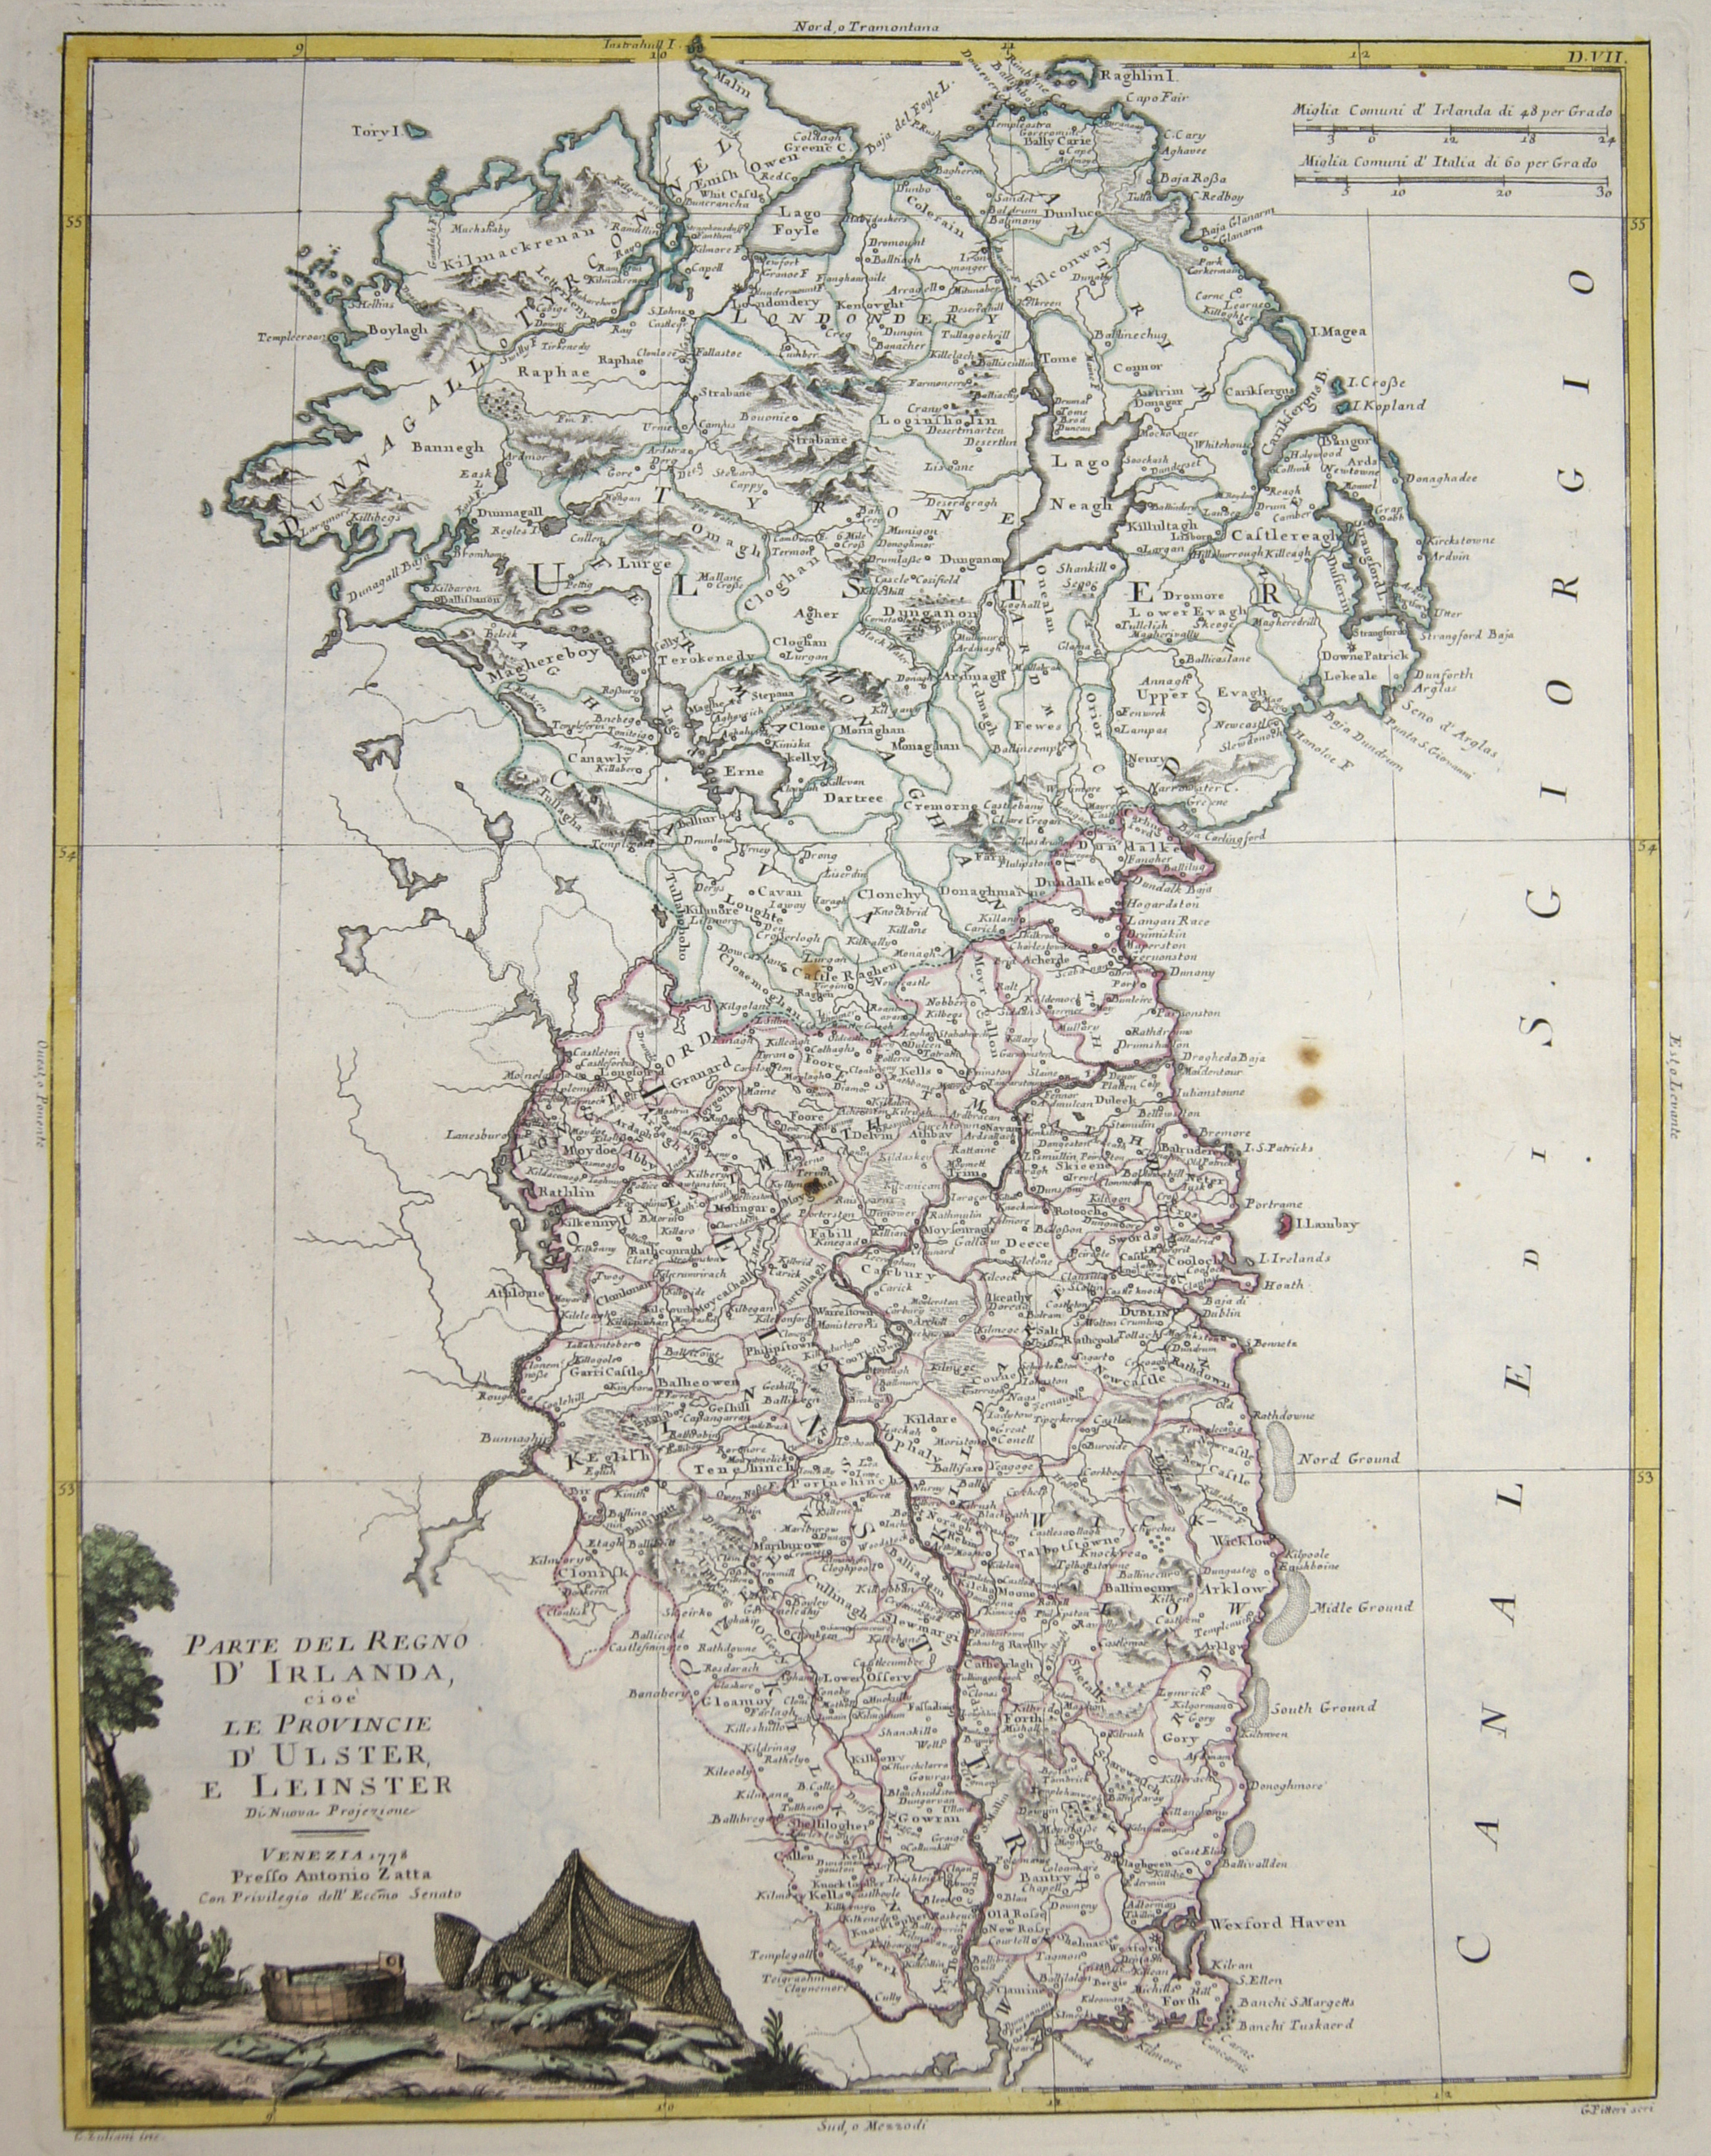 Zatta Antonio Parte del Regno d’Irlanda, cioè le Provincie d‘ Ulster, e Leinster